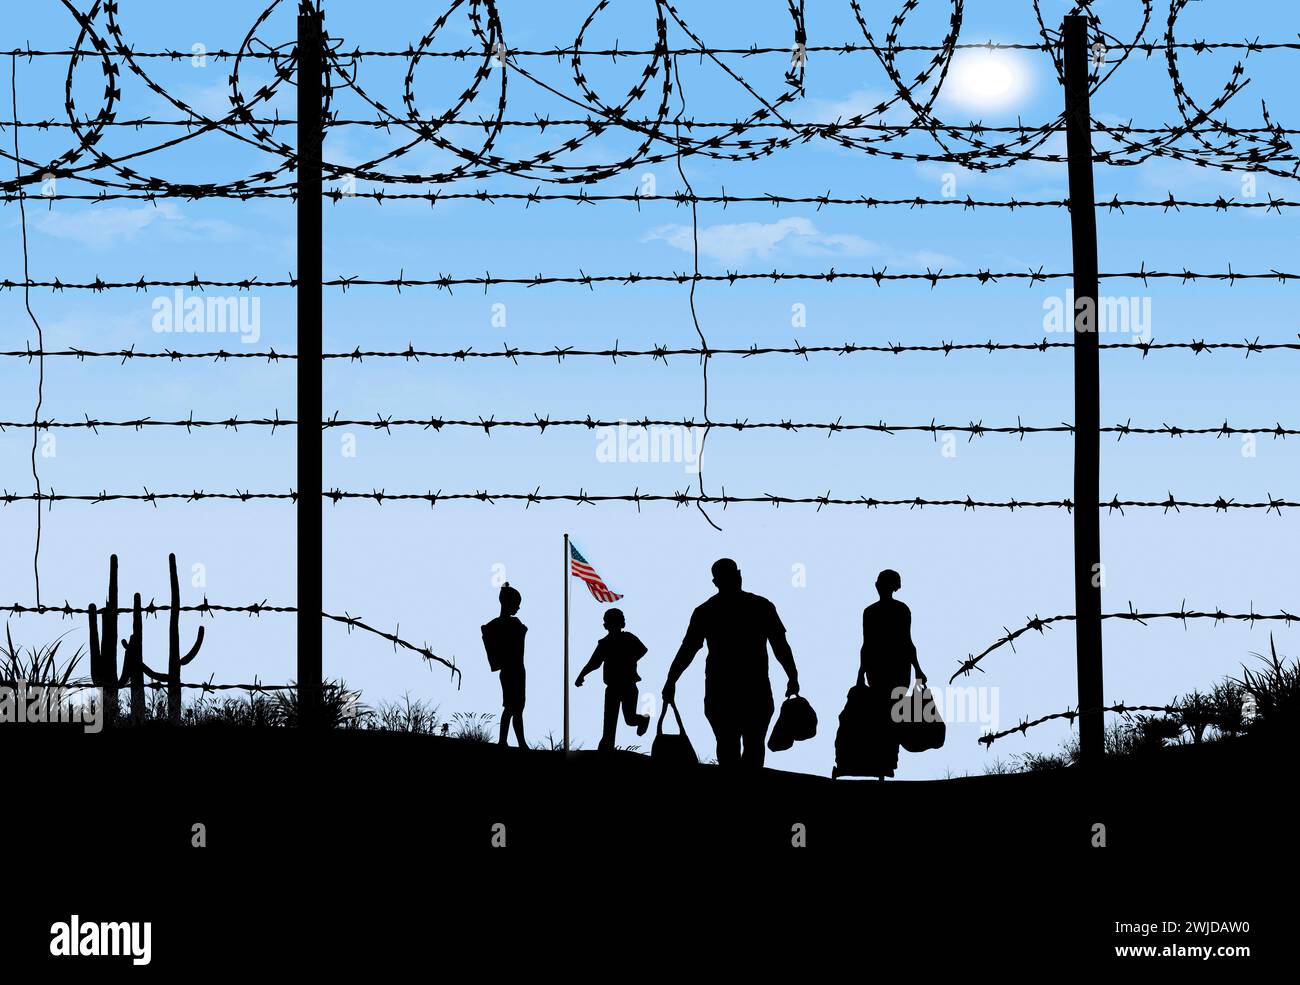 Un homme, une femme et deux enfants sont vus en silhouette après avoir franchi une clôture frontalière à la frontière sud des États-Unis. Ils sont passés par un frère Banque D'Images